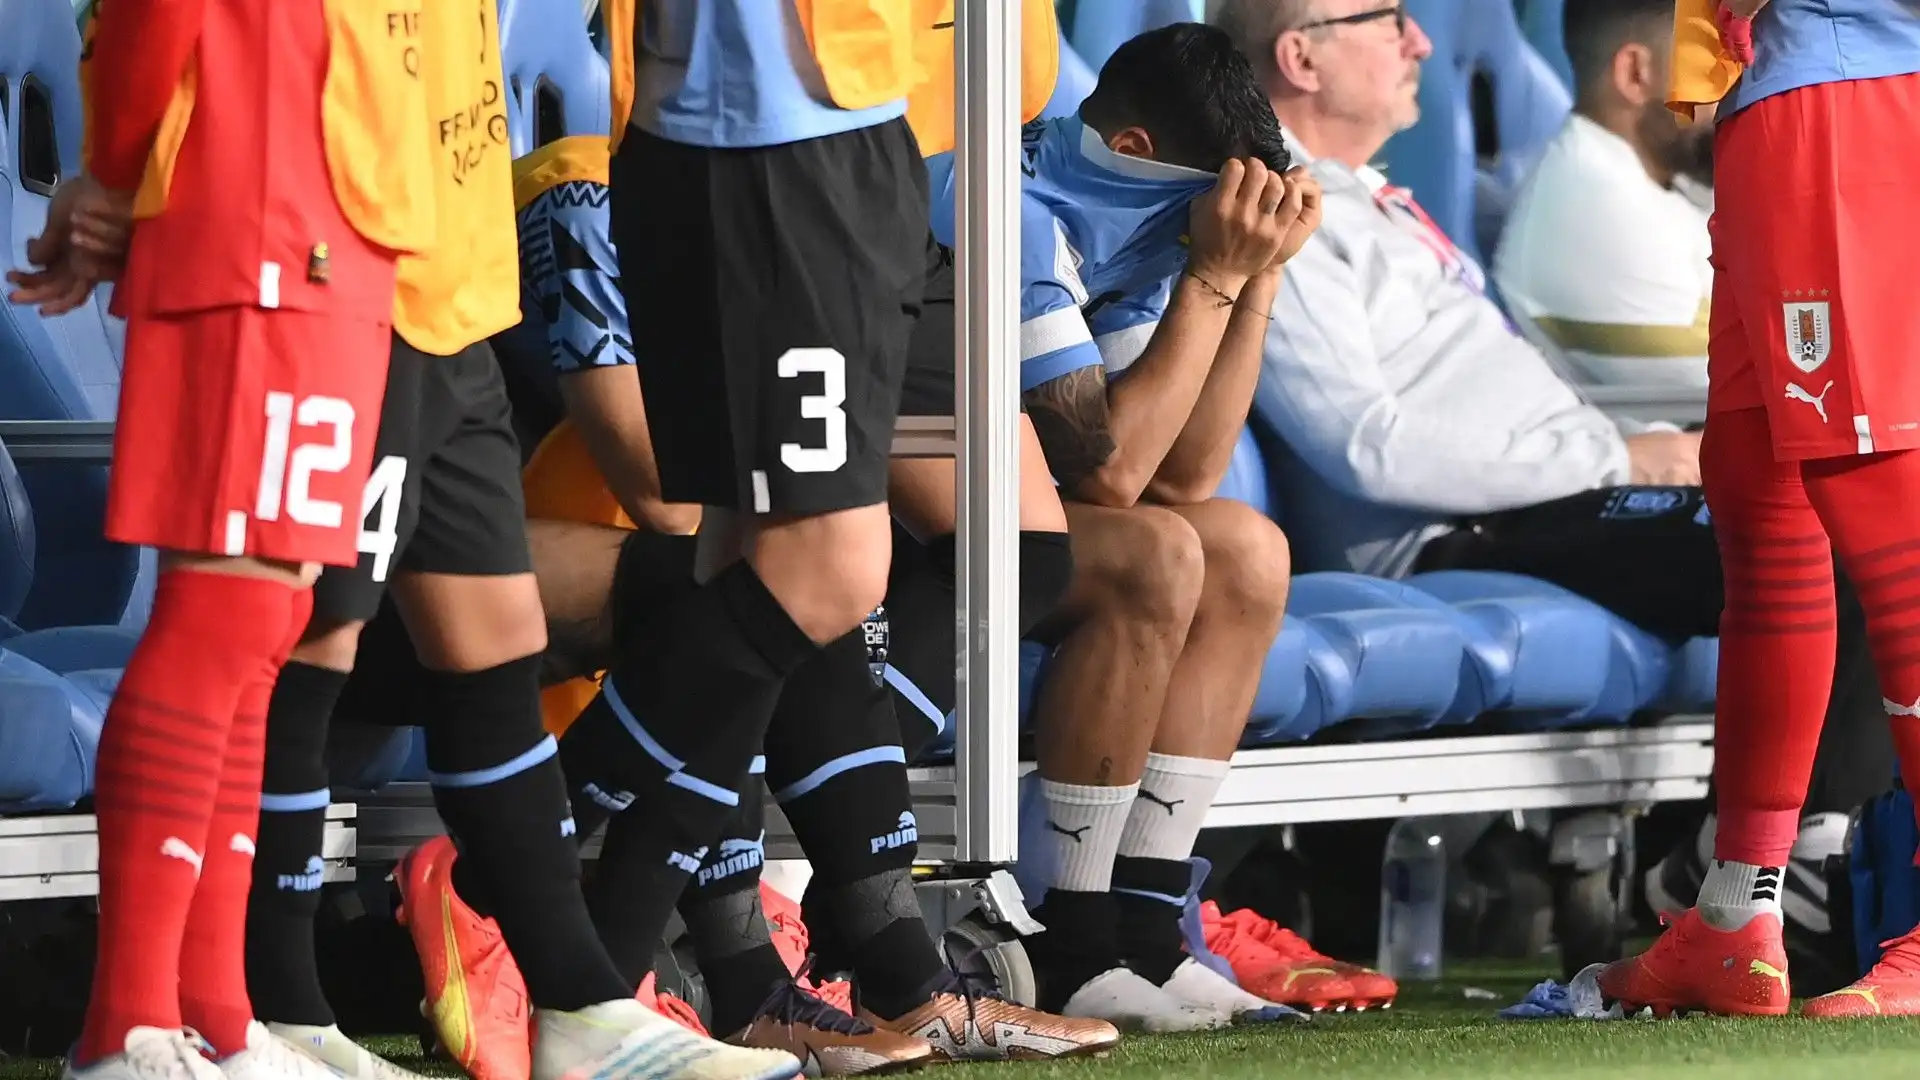 L'Uruguay è stato eliminato dai Mondiali